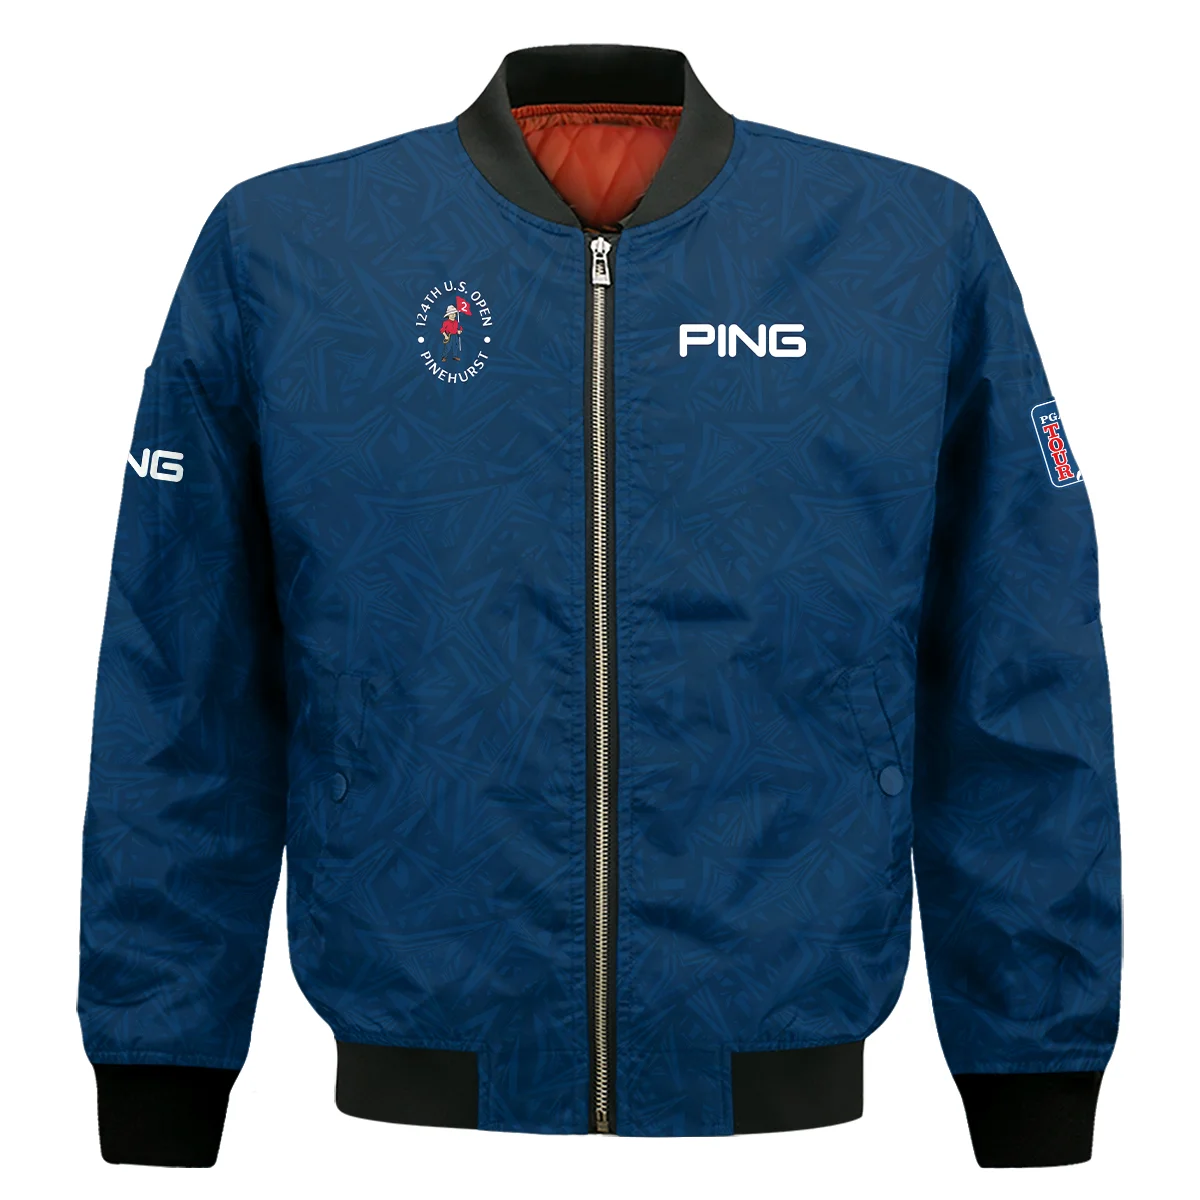 Ping 124th U.S. Open Pinehurst Stars Gradient Pattern Dark Blue Hoodie Shirt Style Classic Hoodie Shirt